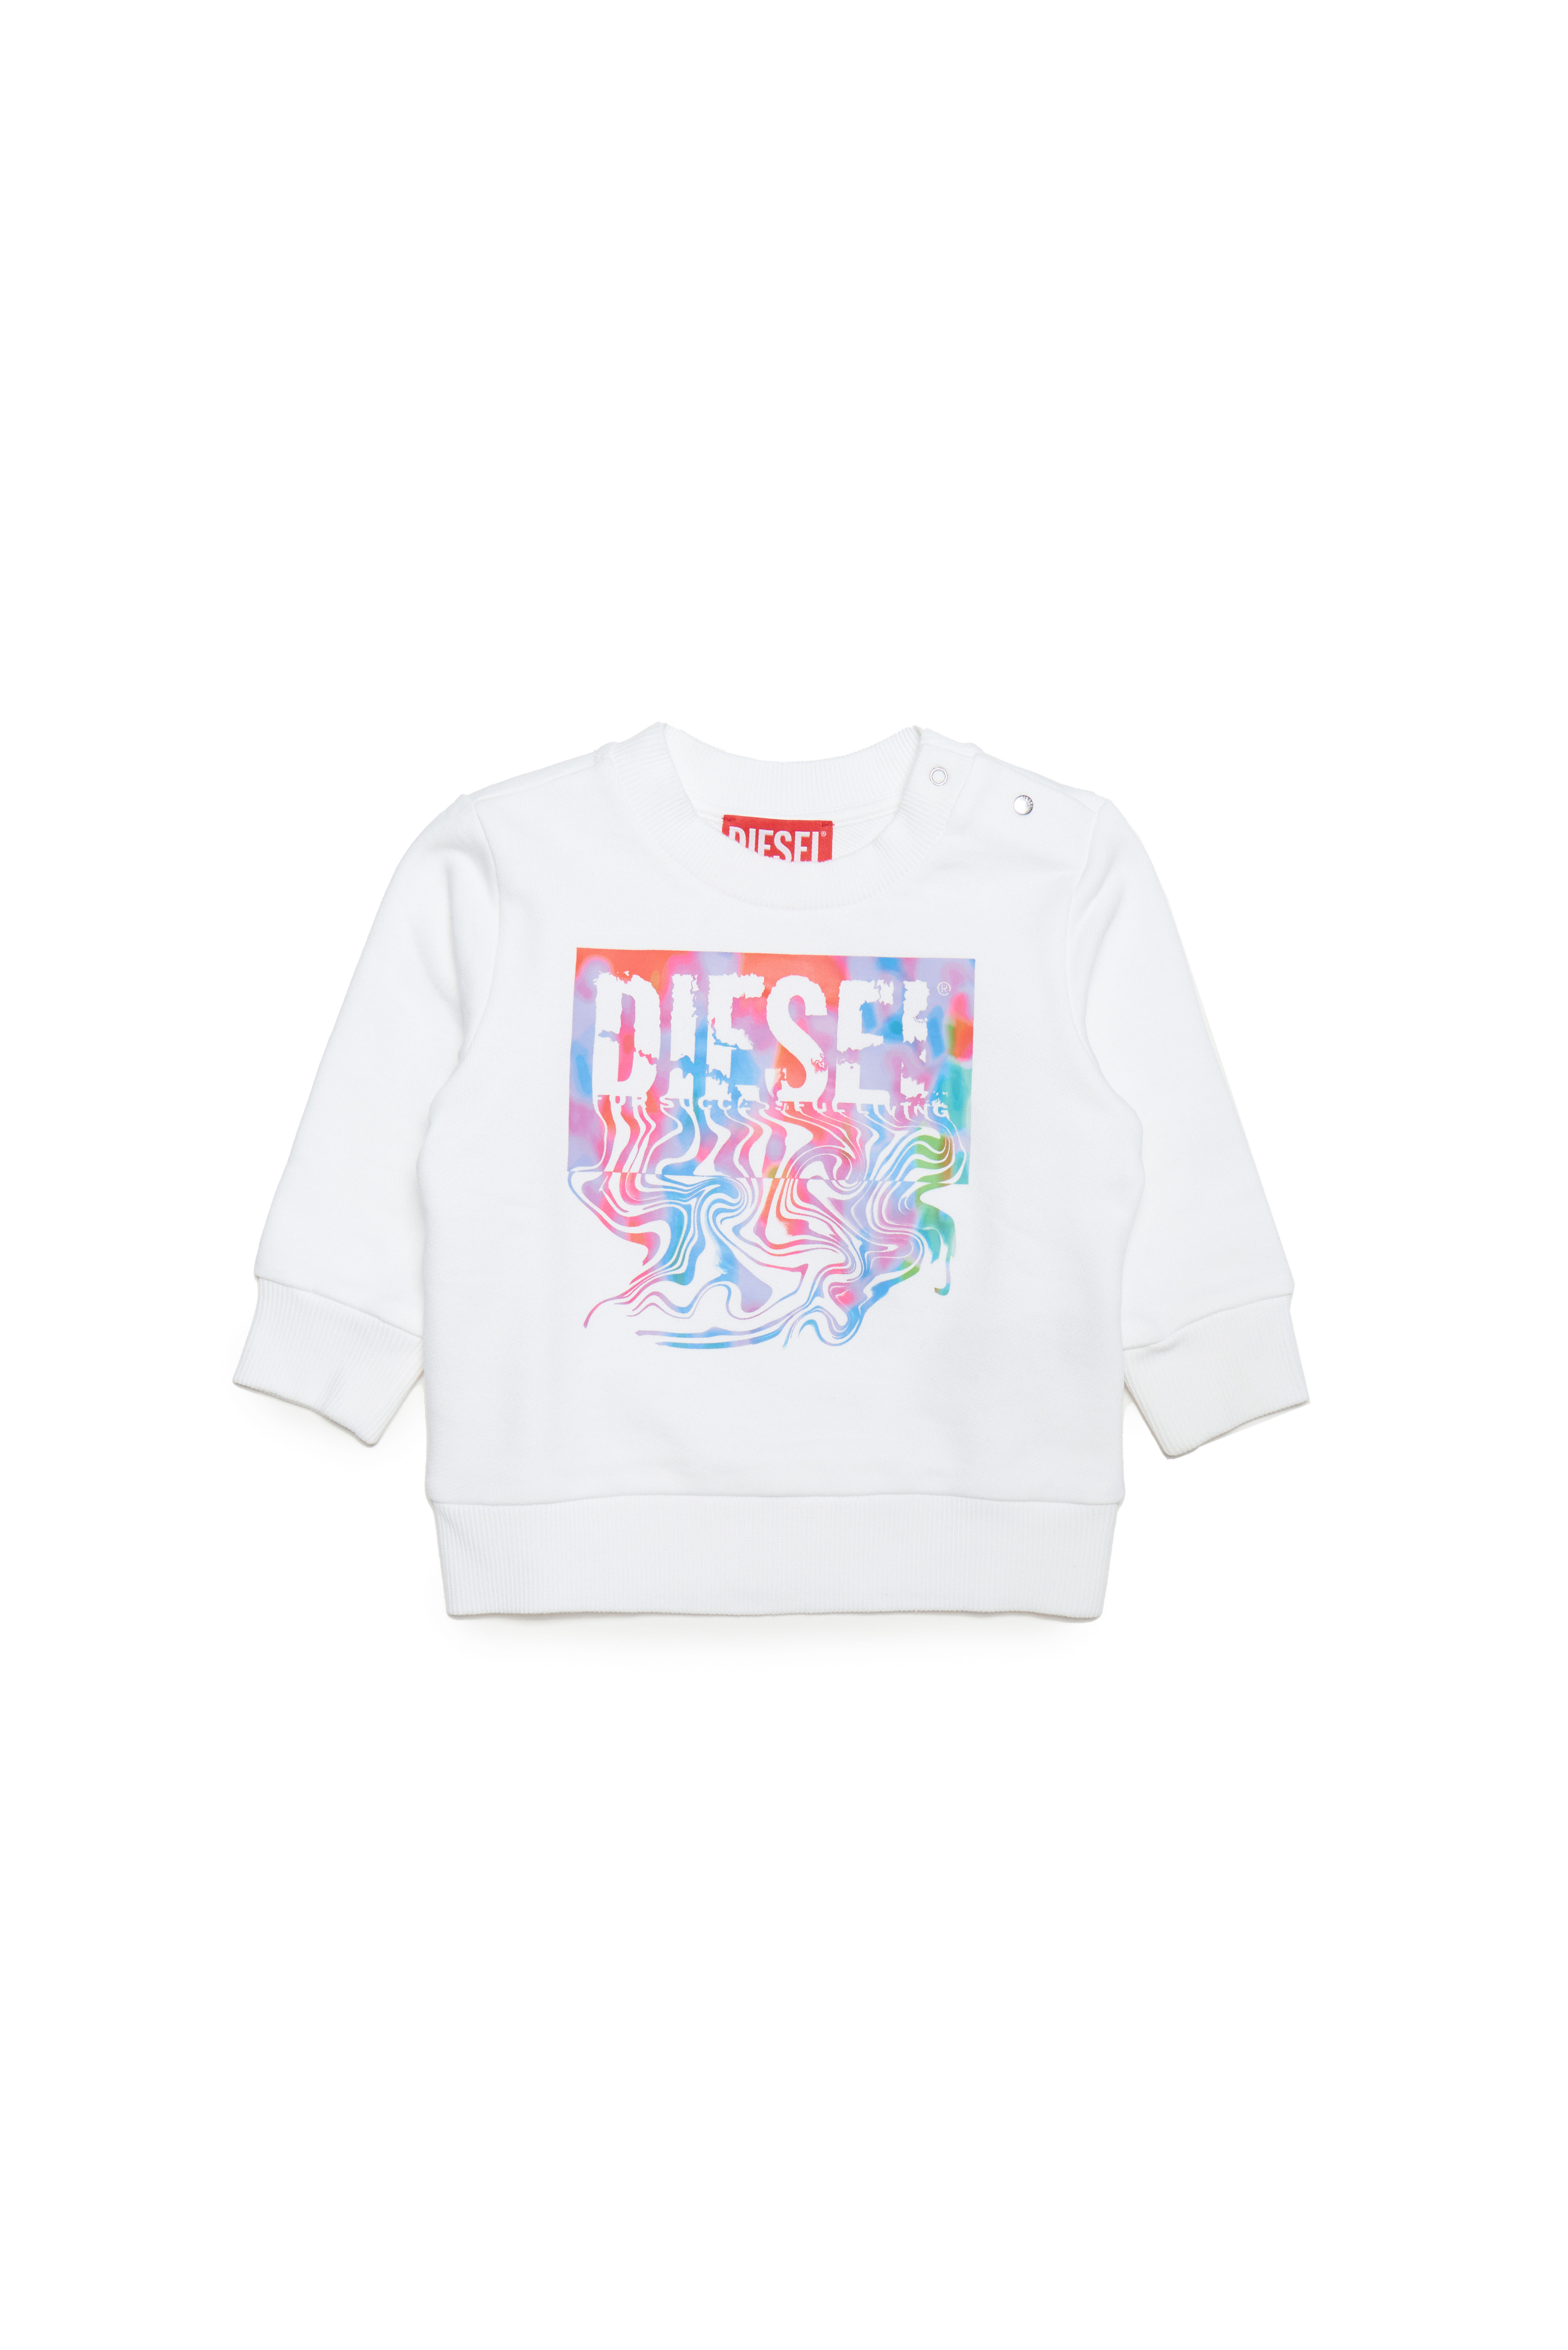 Diesel - Sweatshirt aus Baumwolle mit fließendem Logo - Sweatshirts - Unisex - Weiss